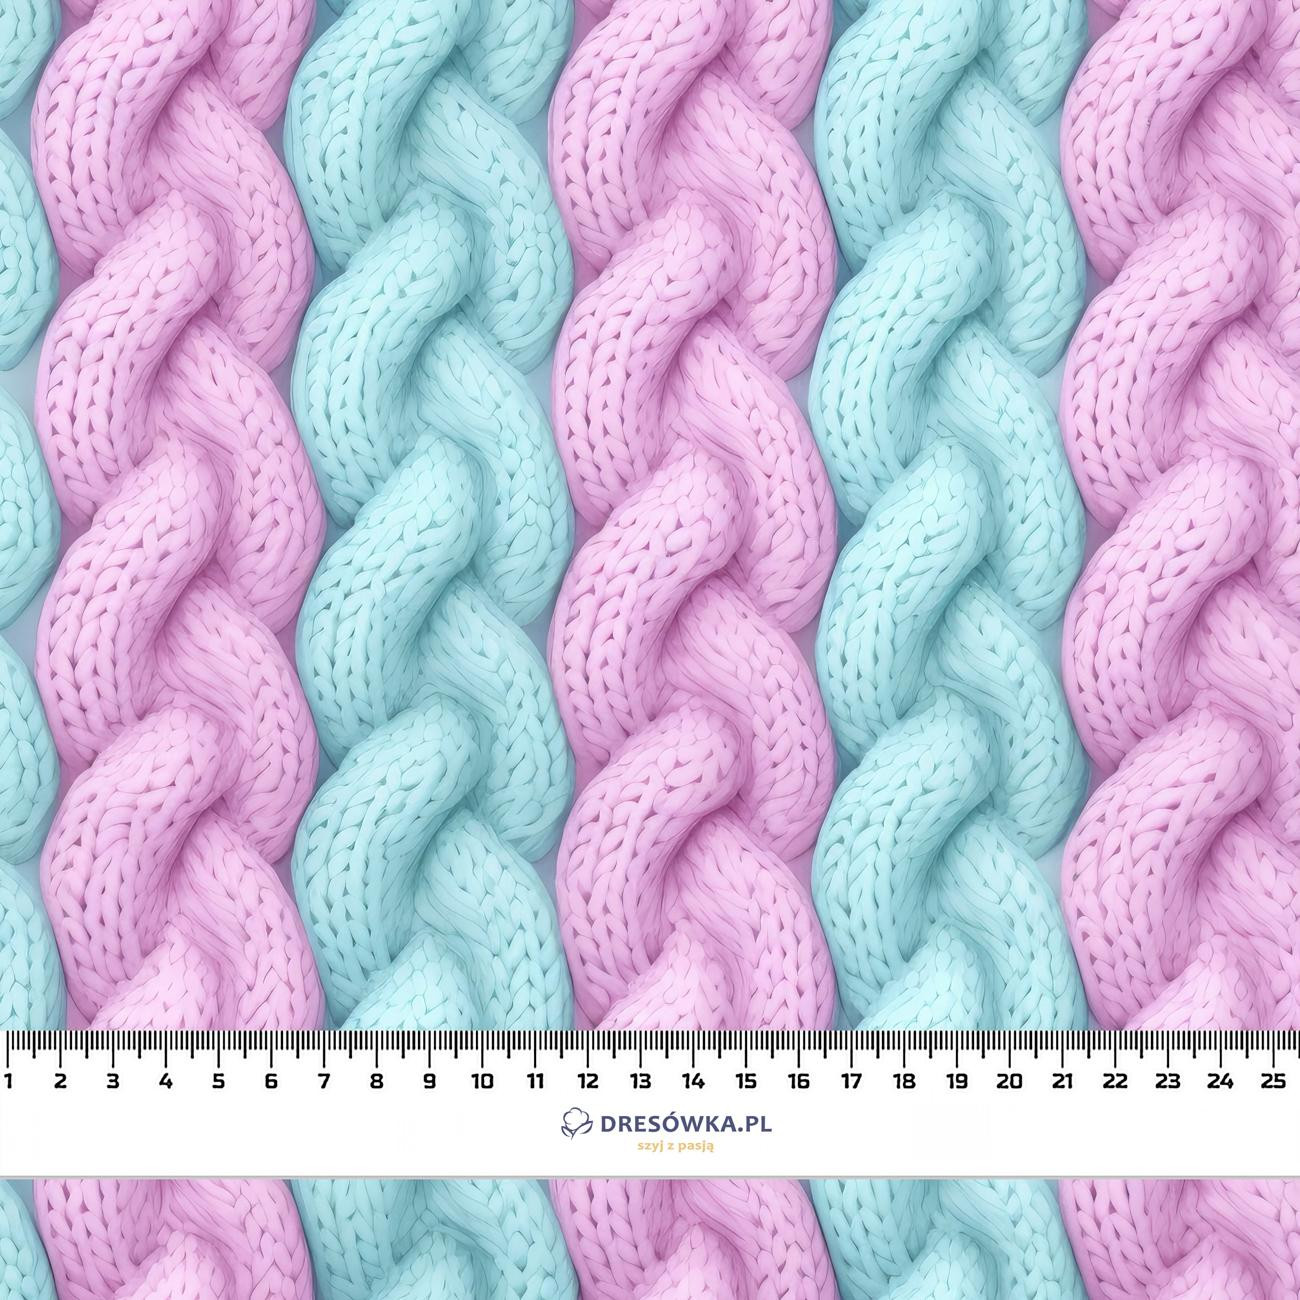 IMITATION PASTEL SWEATER PAT. 4 - Cotton woven fabric